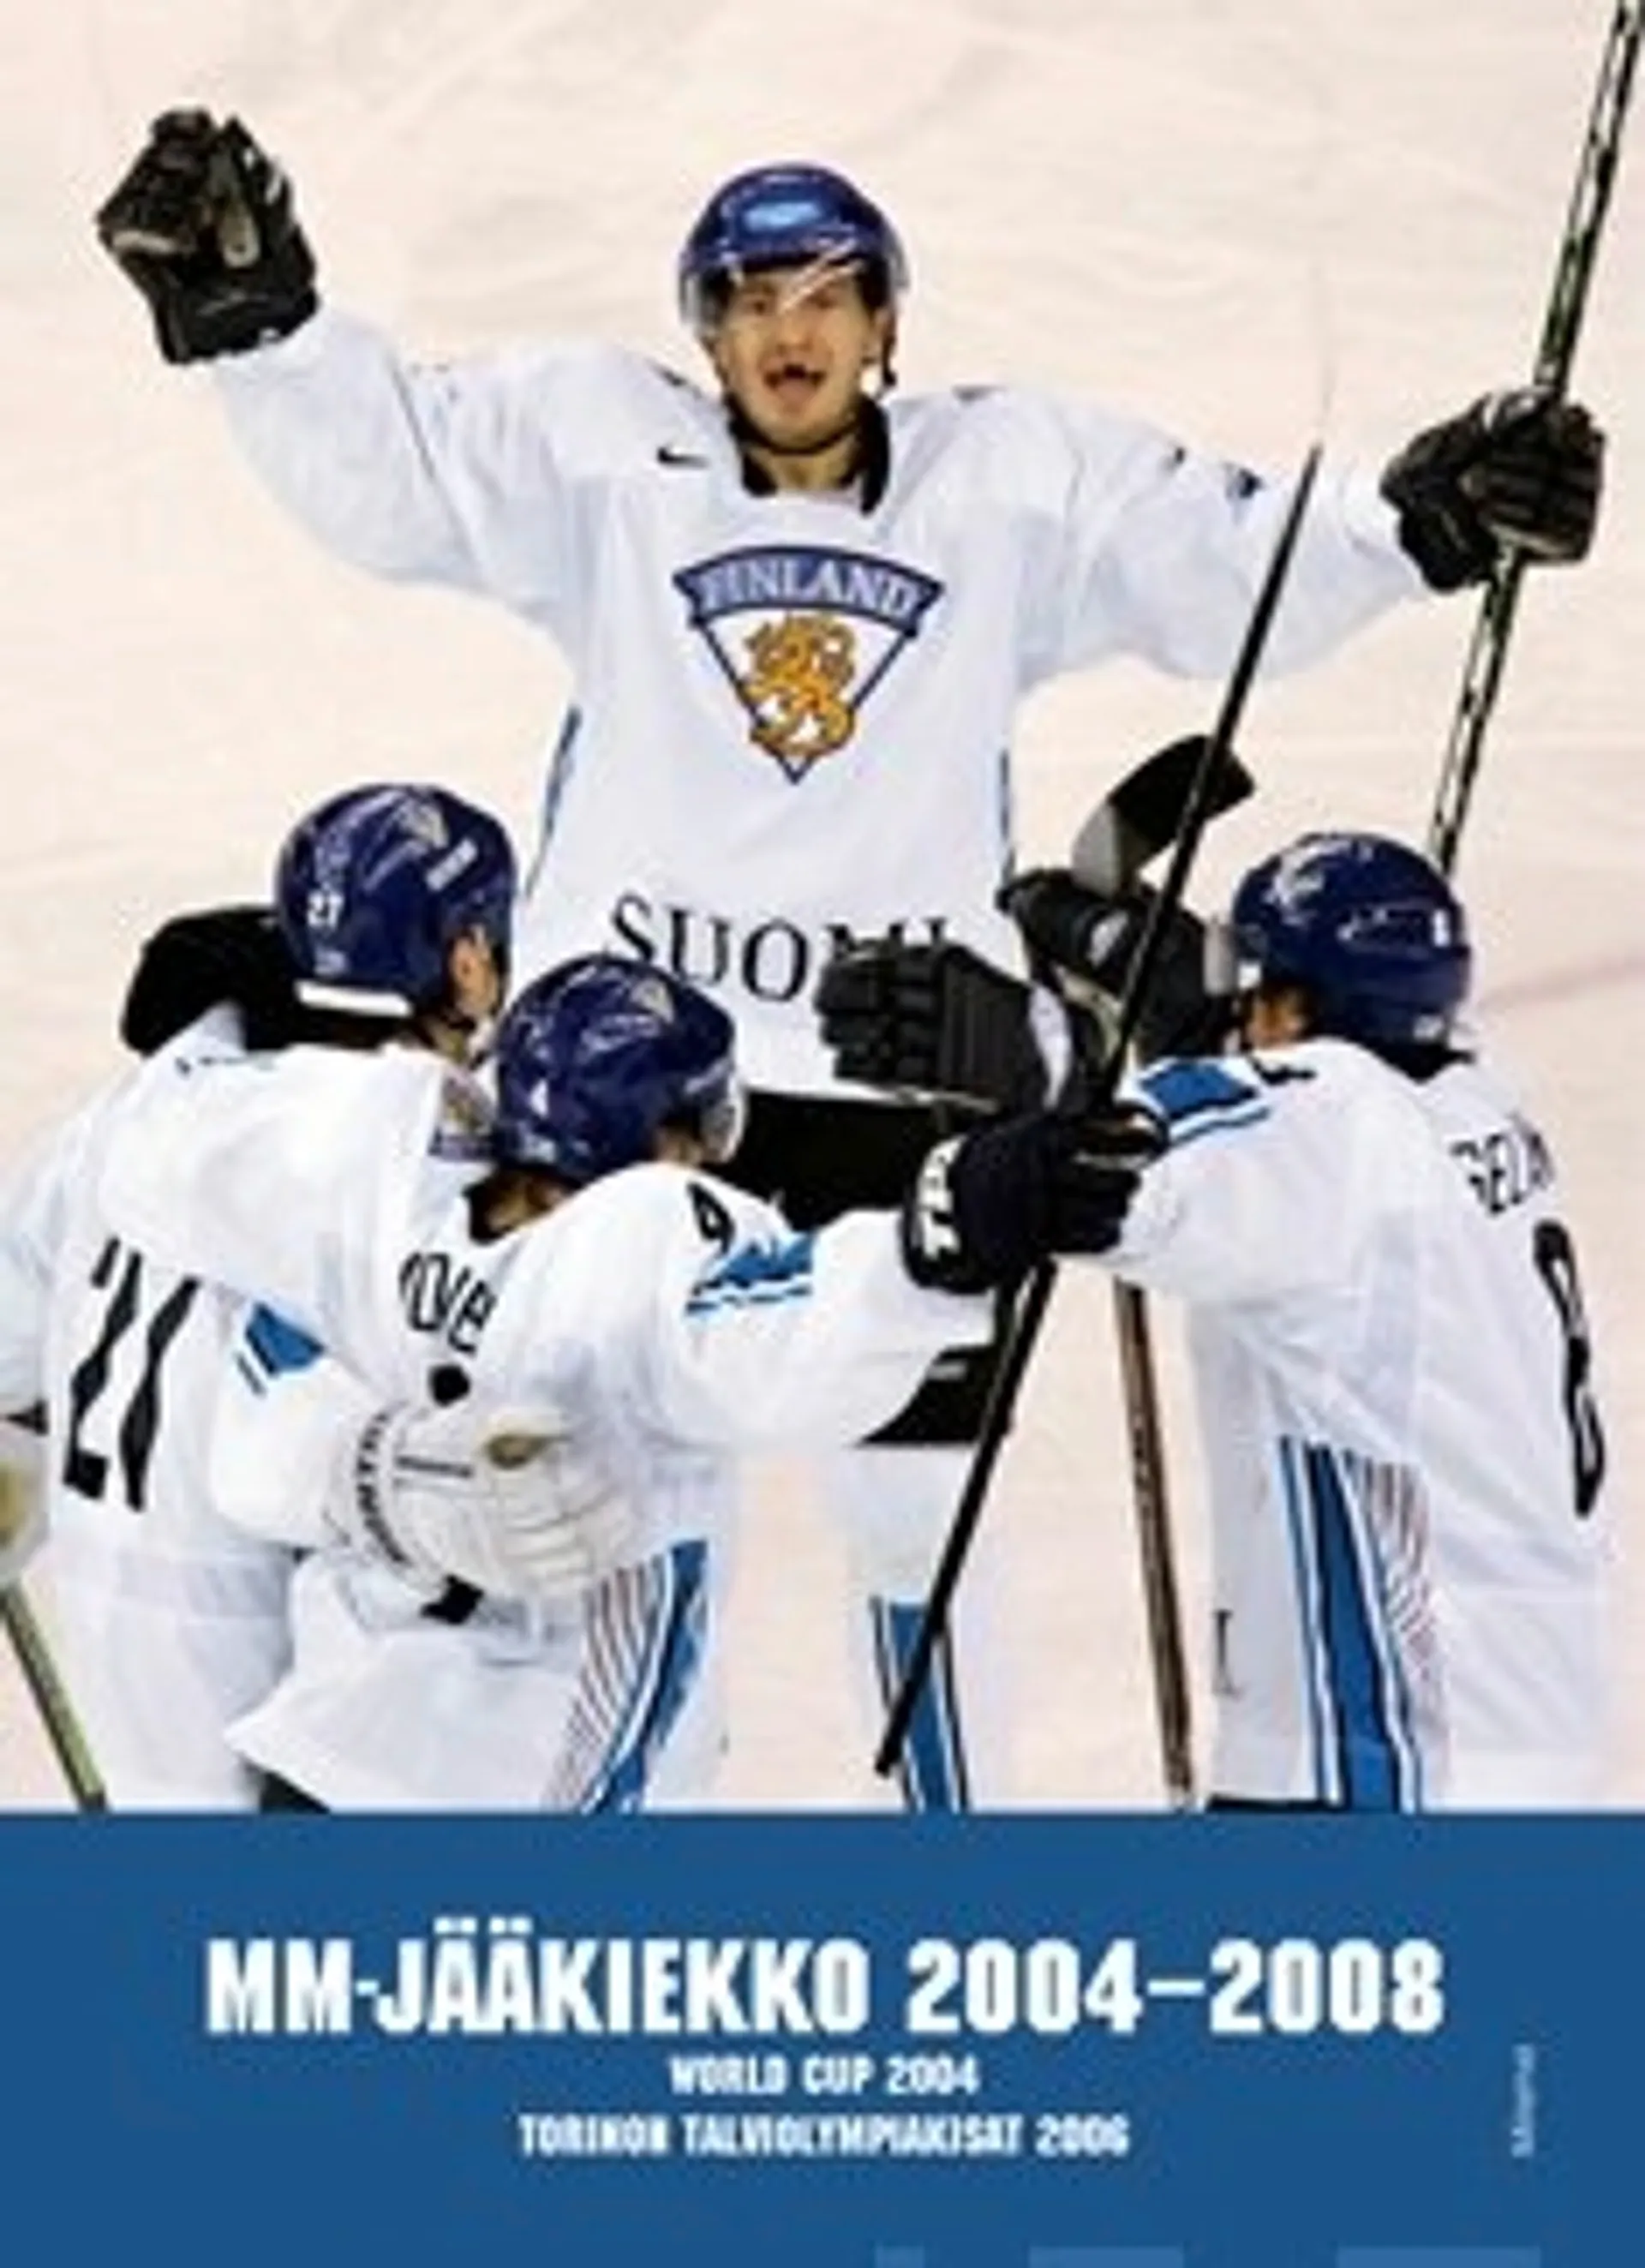 MM-jääkiekko 2004-2008